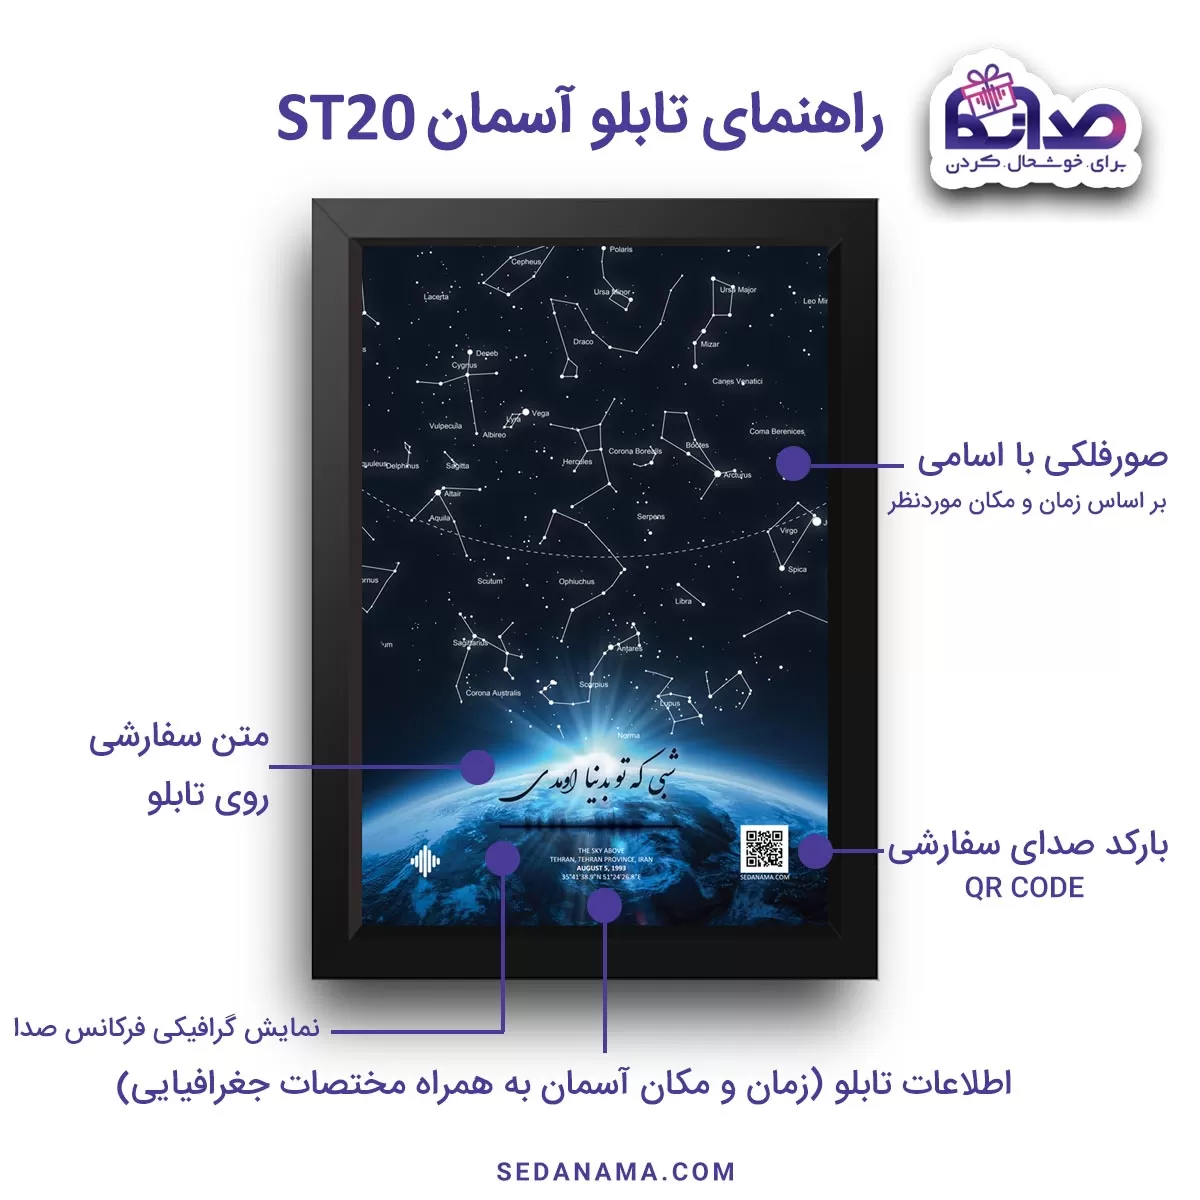 راهنمای تابلو آسمان ST20